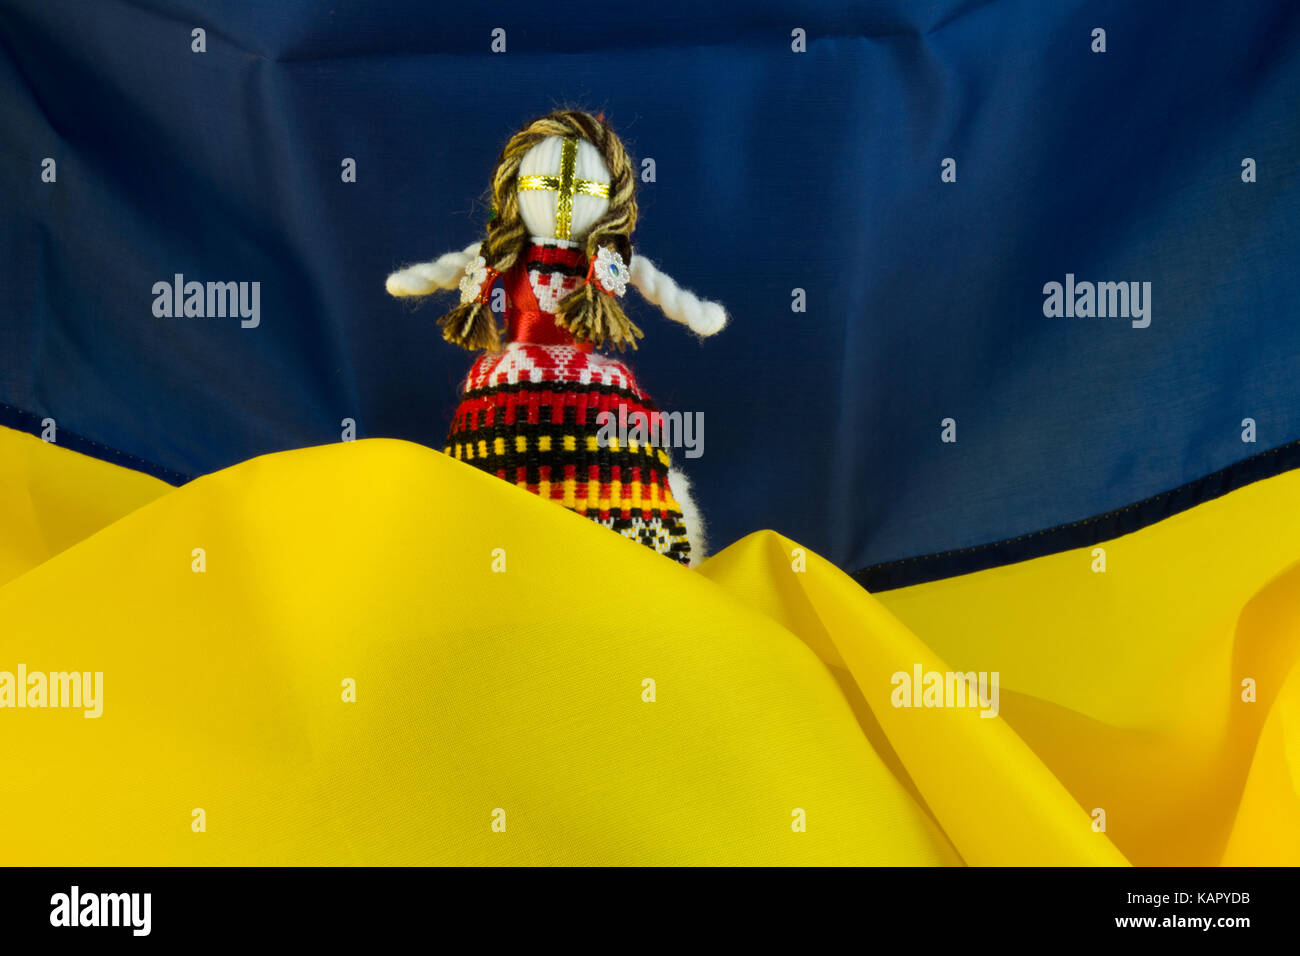 Handmade textill doll, poupées de chiffon à la main motanka sur le fond du drapeau de l'Ukraine. motanka - poupée folklorique ukrainienne la protection de la maison familiale Banque D'Images